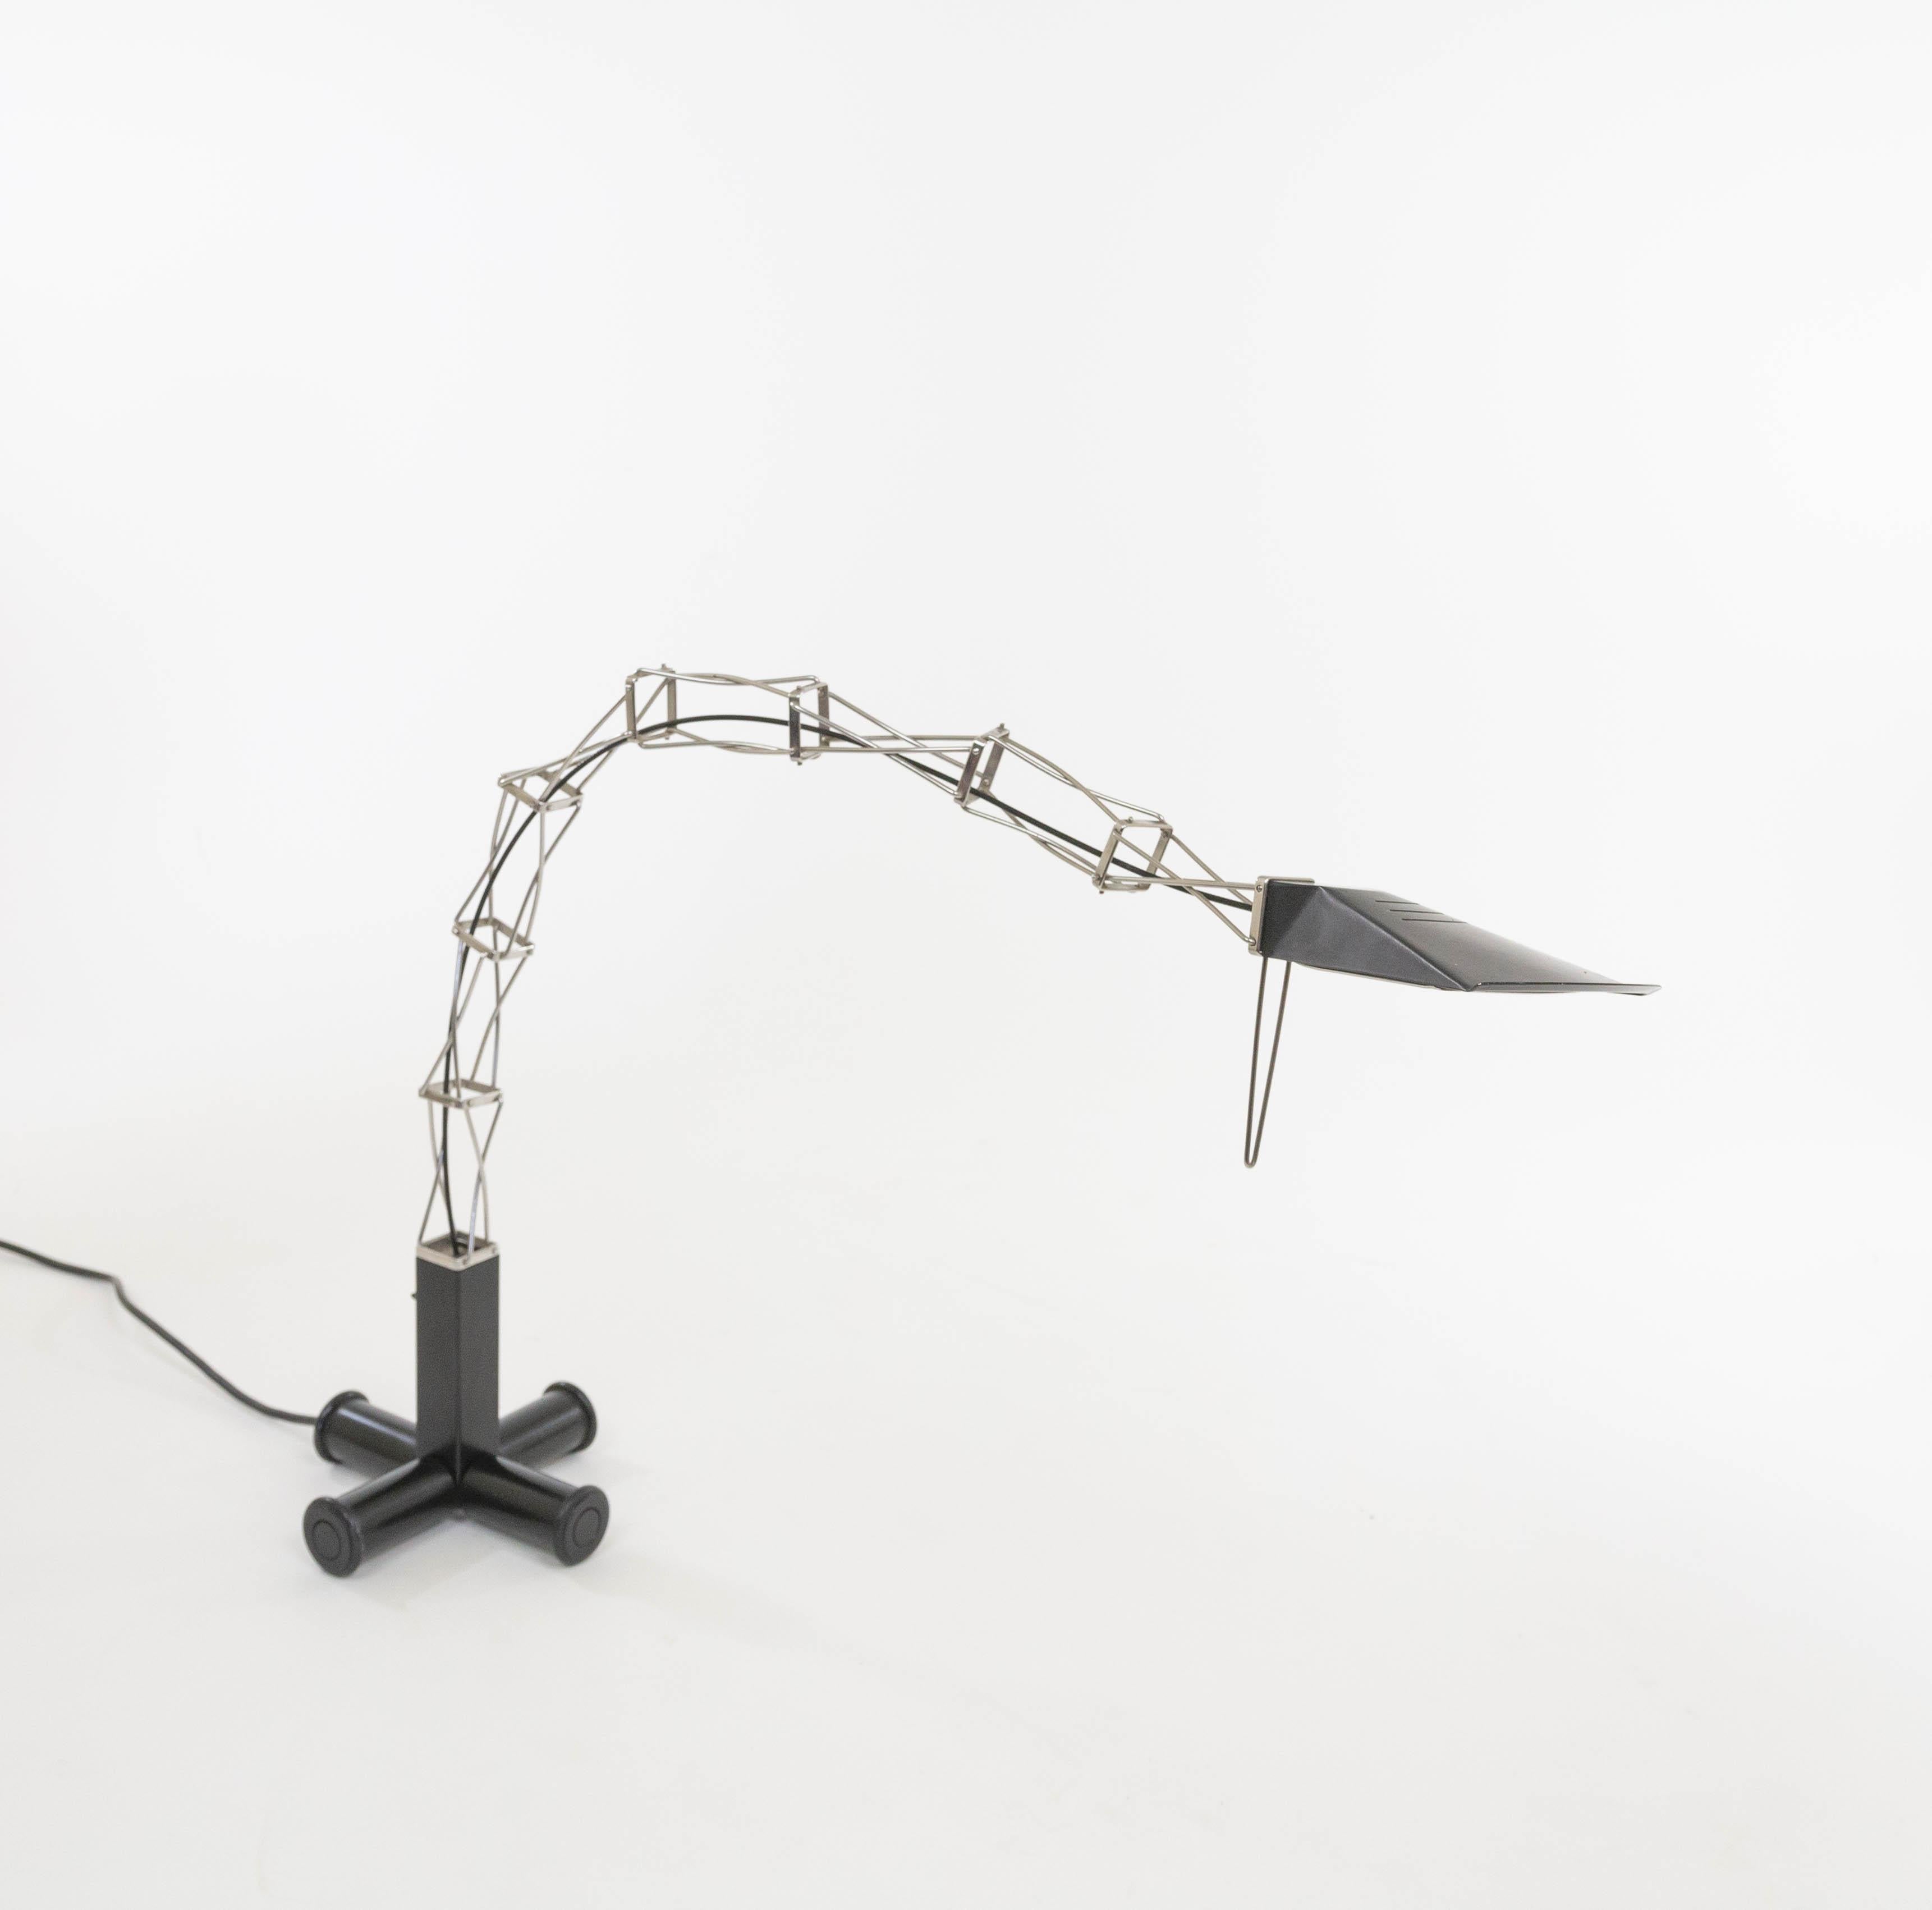 Lampe de table halogène Multix conçue par Yaacov Kaufman pour le fabricant de luminaires Lumina dans les années 1980.

La base de la lampe de table Multix est constituée de quatre tubes ronds rotatifs qui se terminent par des roues. Le socle permet